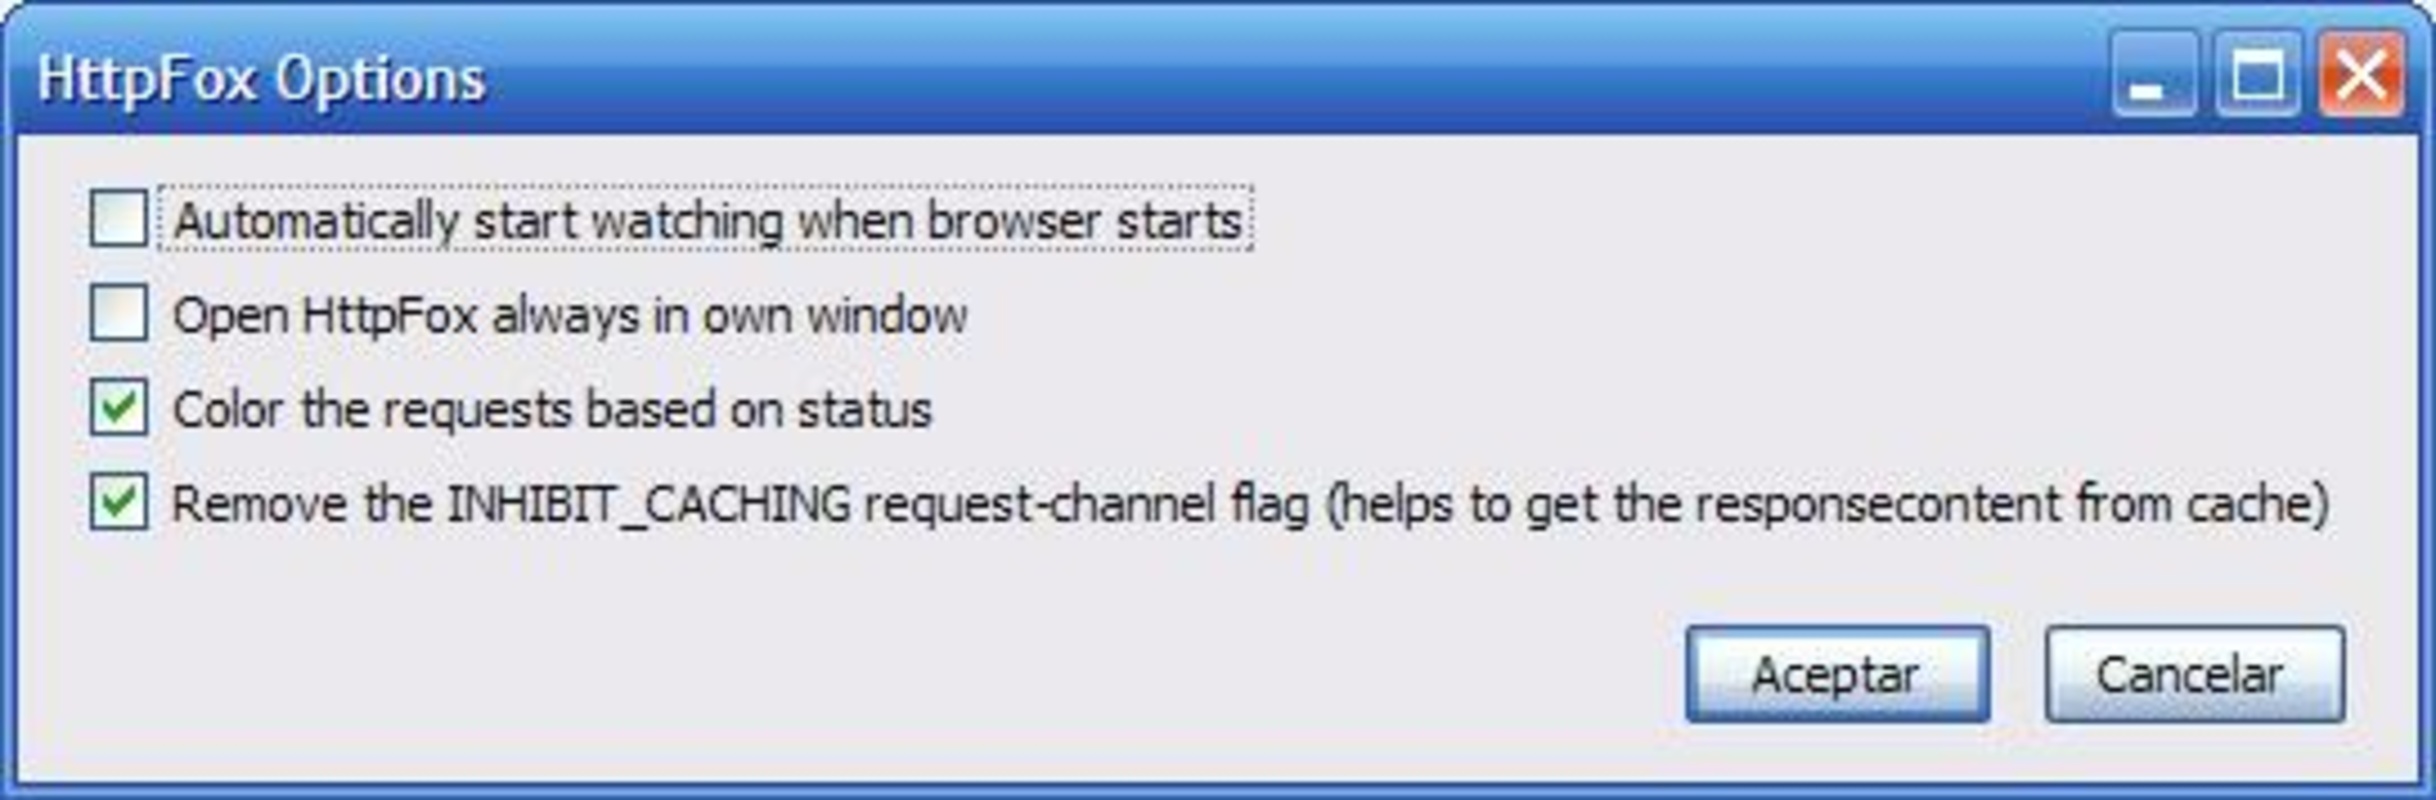 HttpFox 0.8.1 for Windows Screenshot 1